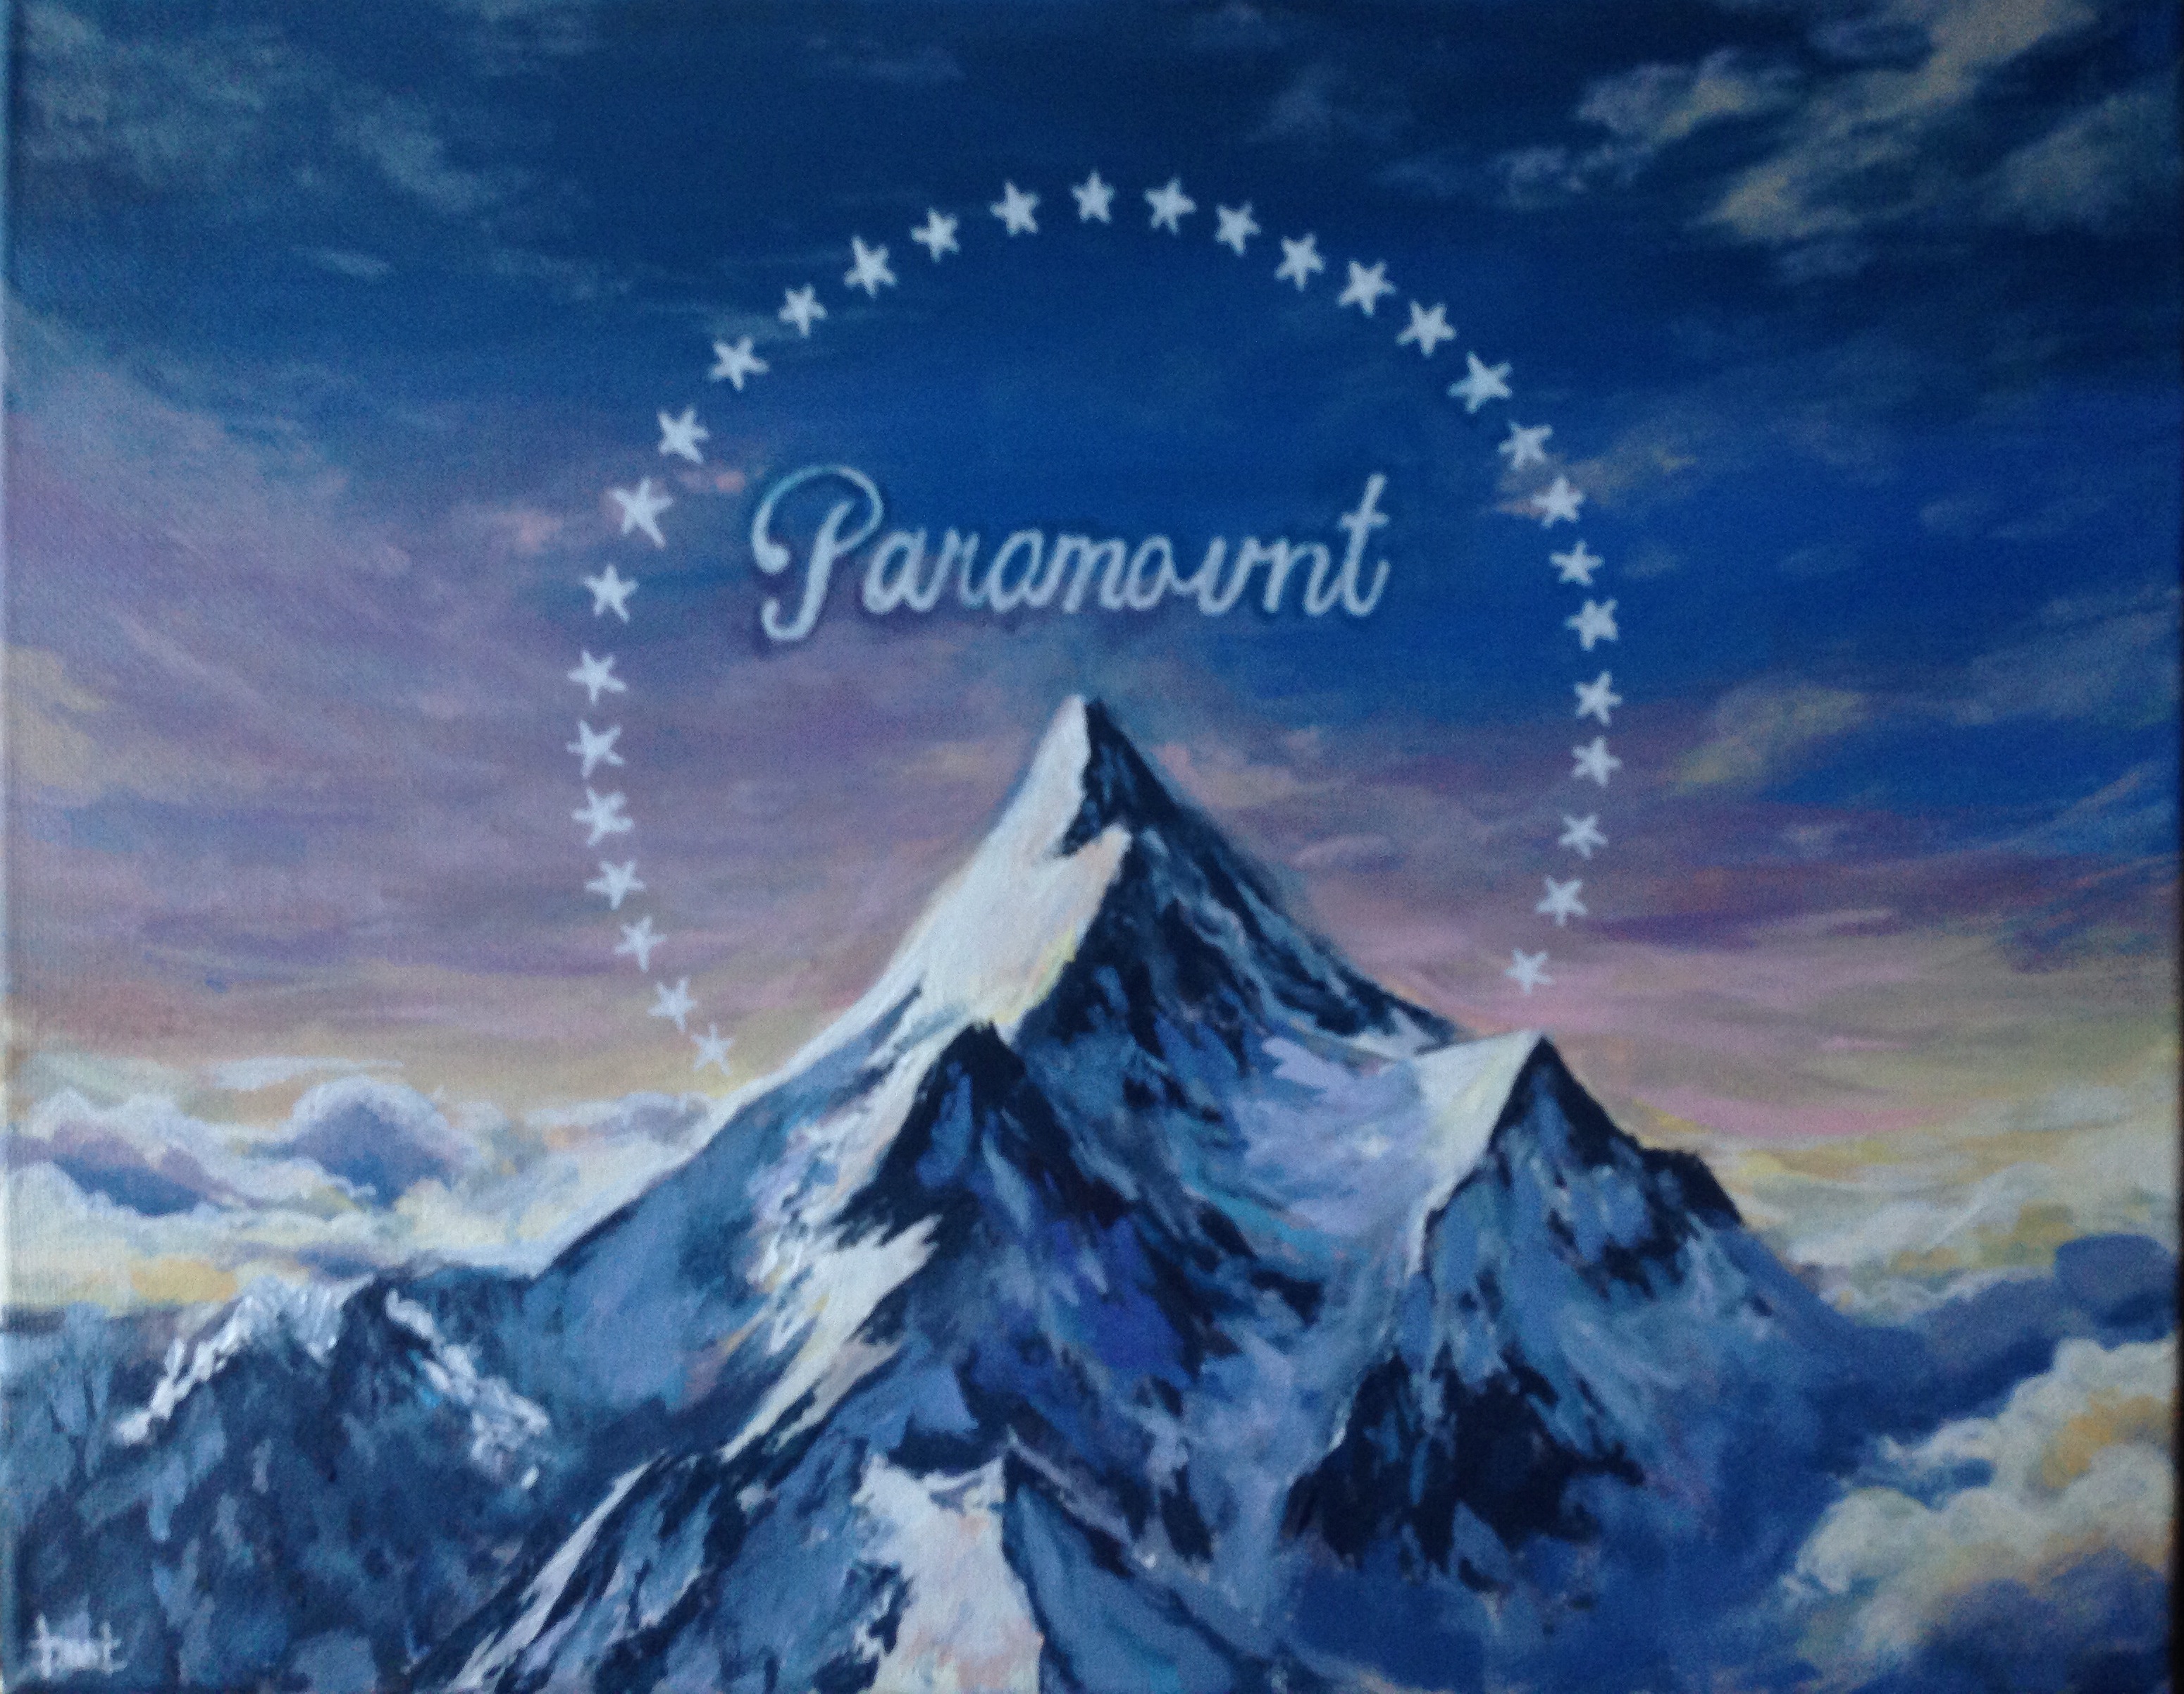 Заставка пикчерс. Студия Парамаунт Пикчерз. Парамаунт Пикчерз гора. Гора на логотипе Парамаунт Пикчерз. Кинокомпания Paramount.